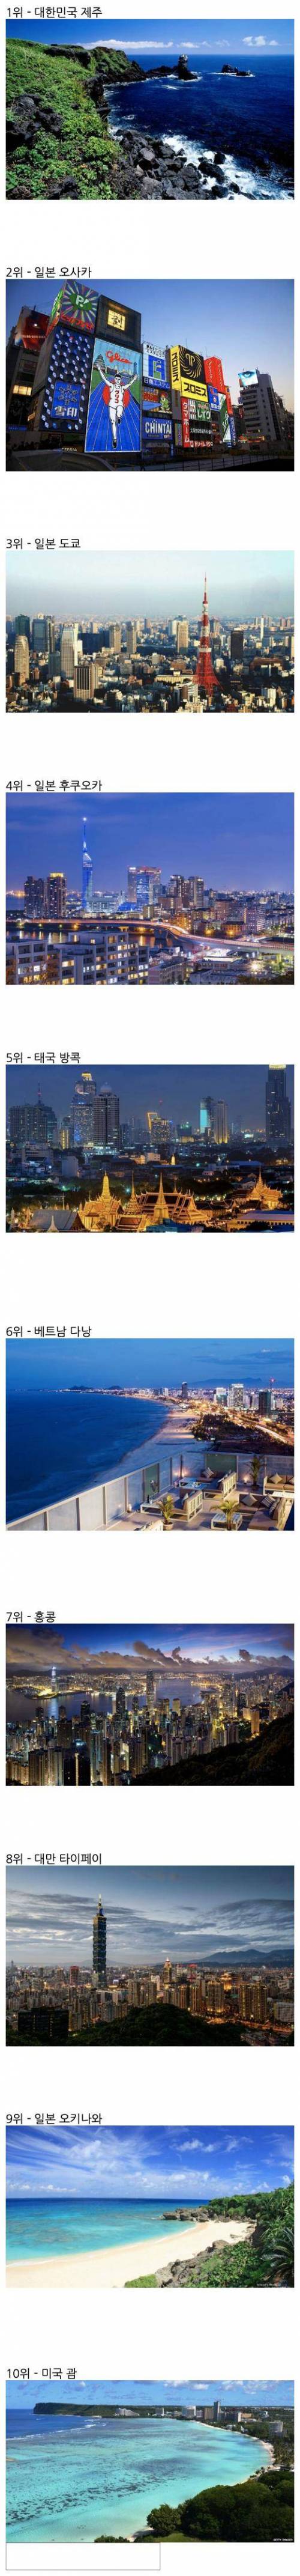 2017년 한국인들이 가장 많이 간 여행지.jpg